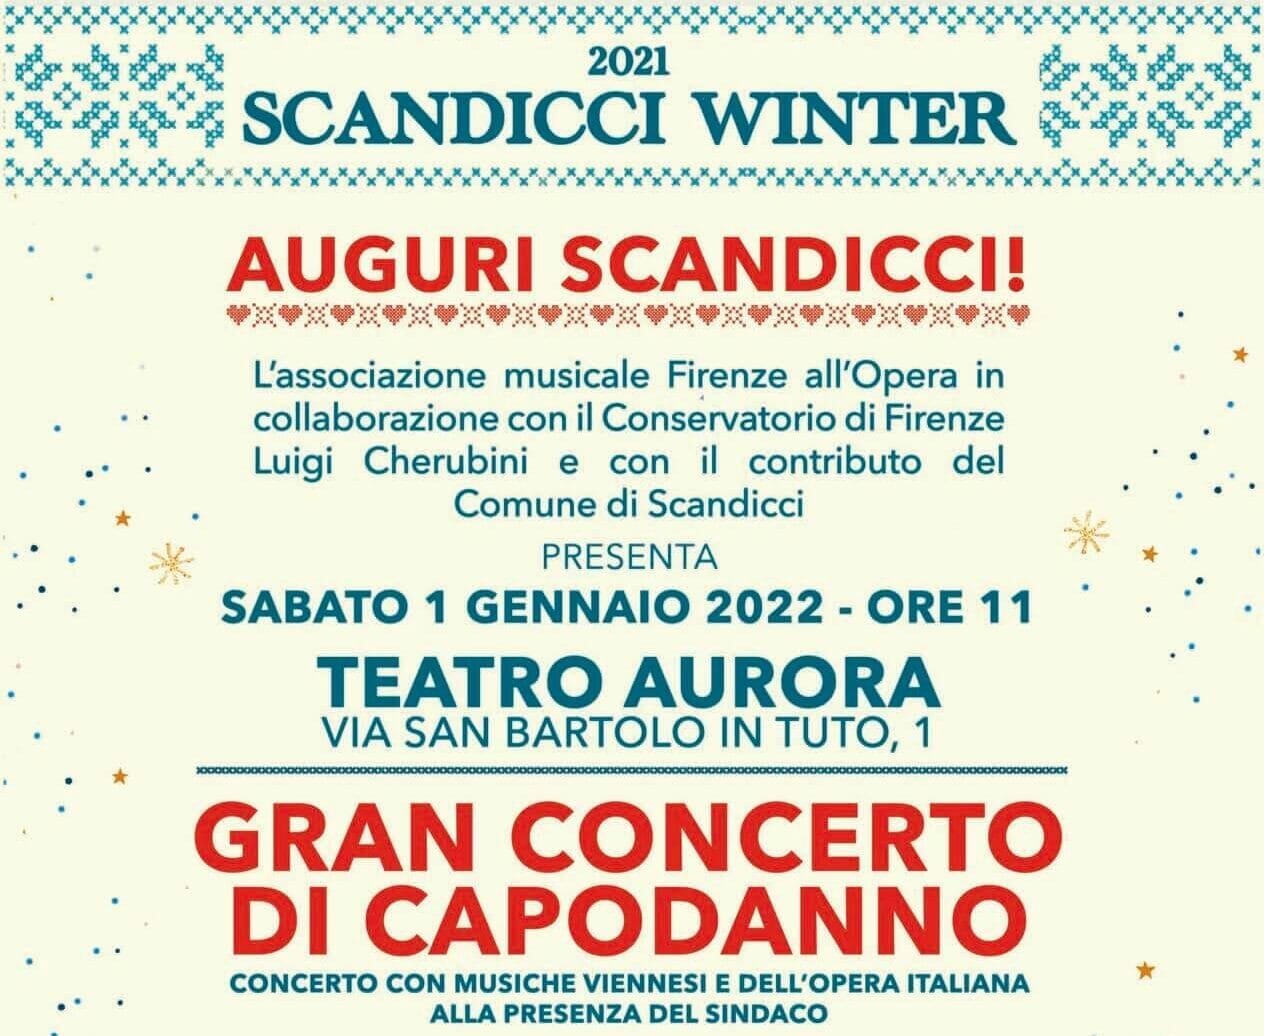 Scandicci Winter, al Teatro Aurora il concerto di Capodanno